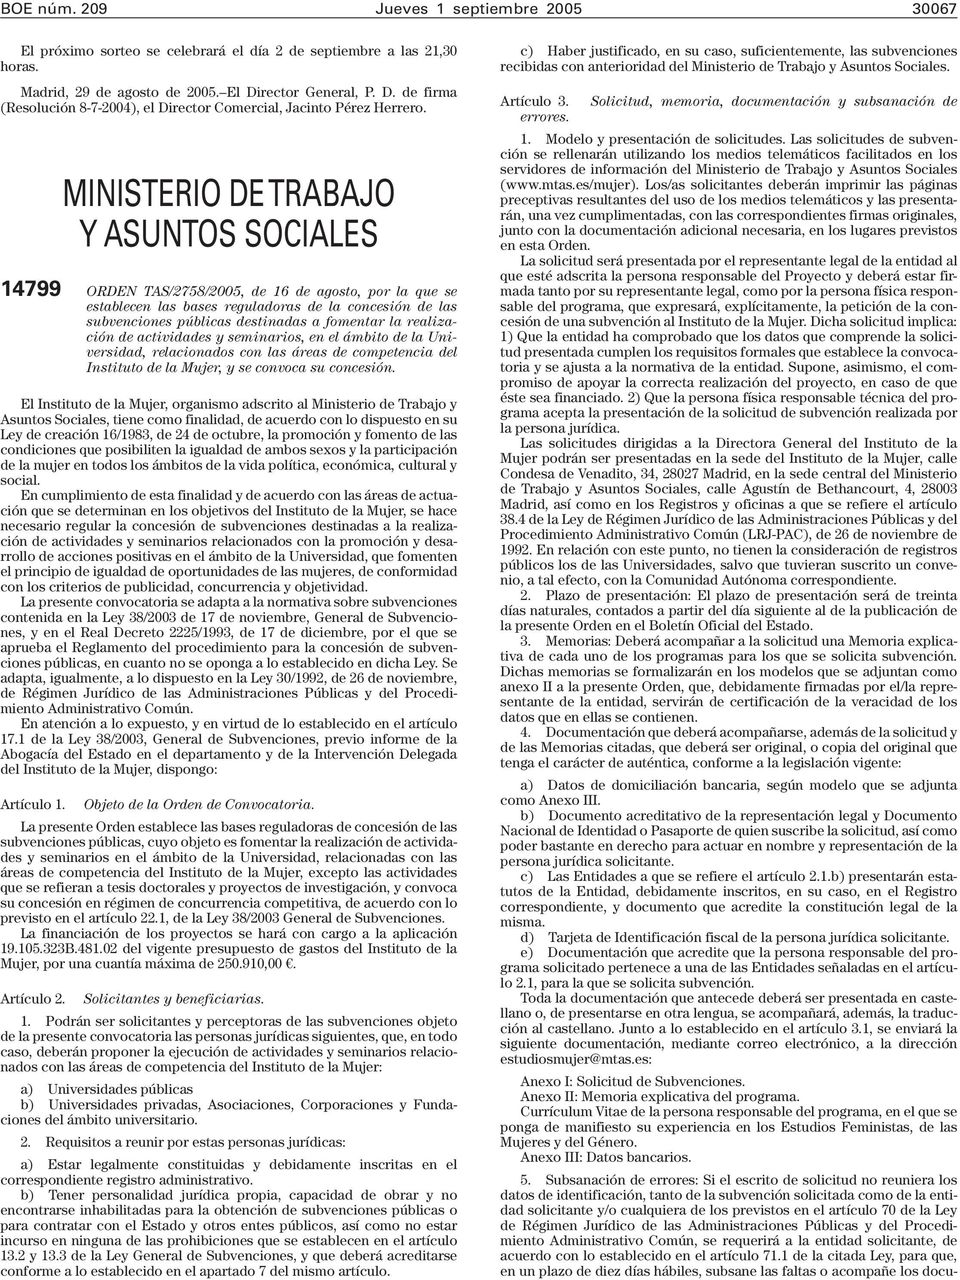 MINISTERIO DE TRABAJO Y ASUNTOS SOCIALES 14799 ORDEN TAS/2758/2005, de 16 de agosto, por la que se establecen las bases reguladoras de la concesión de las subvenciones públicas destinadas a fomentar